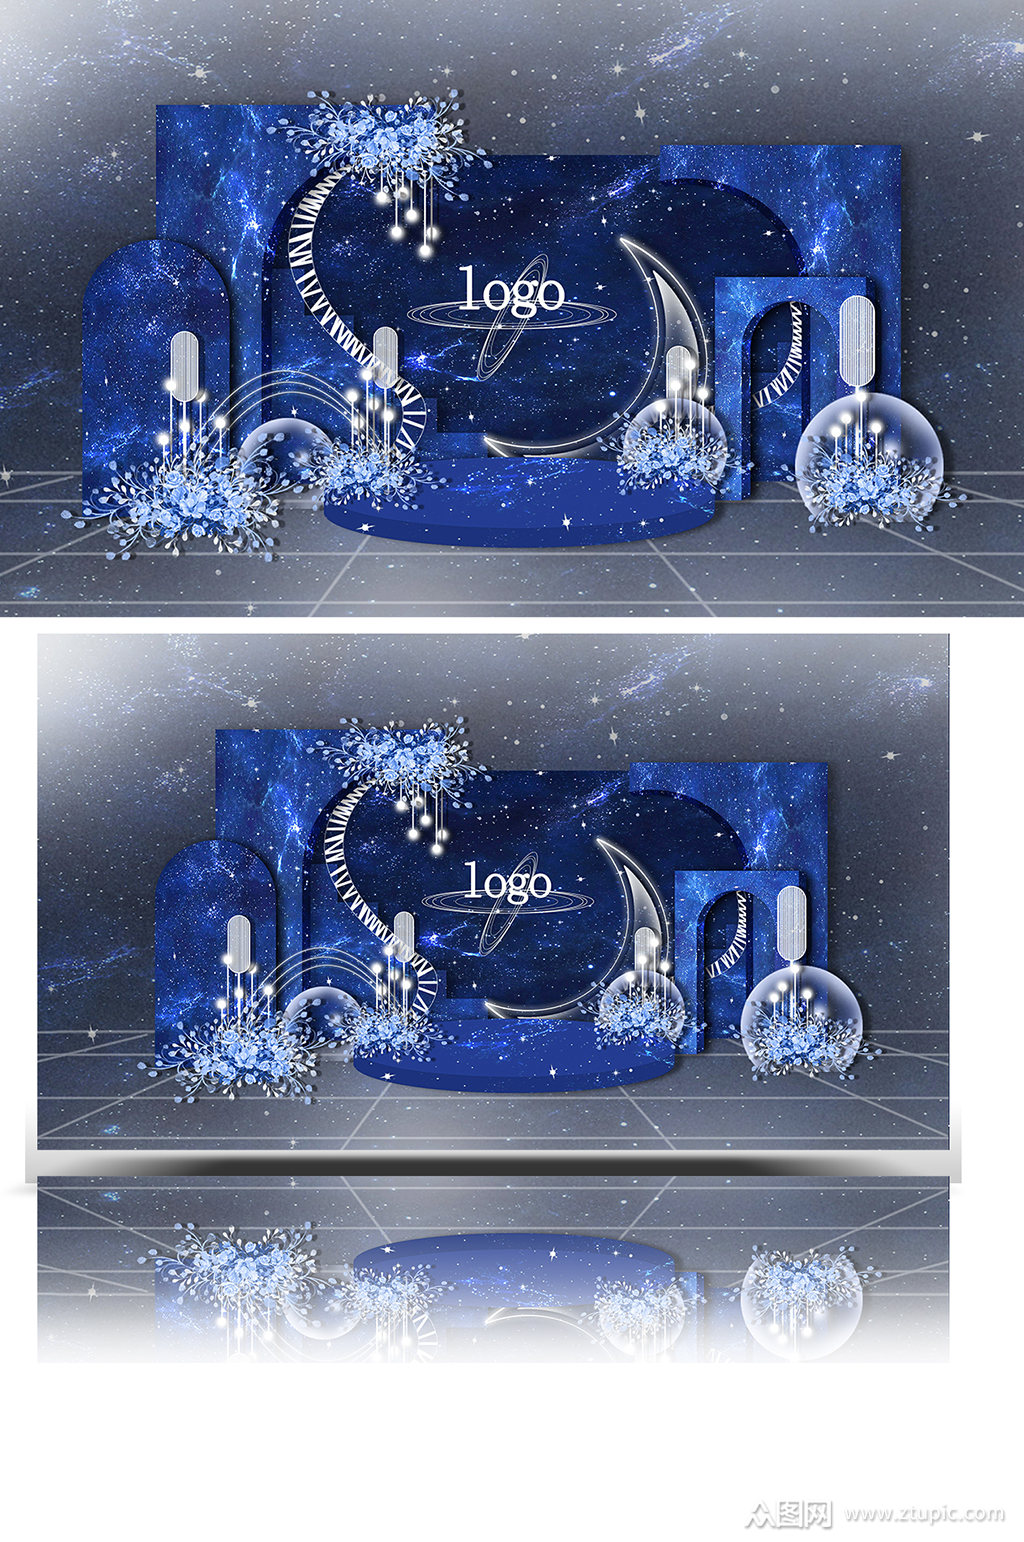 蓝色系星空主题婚礼效果图梦幻背景板素材